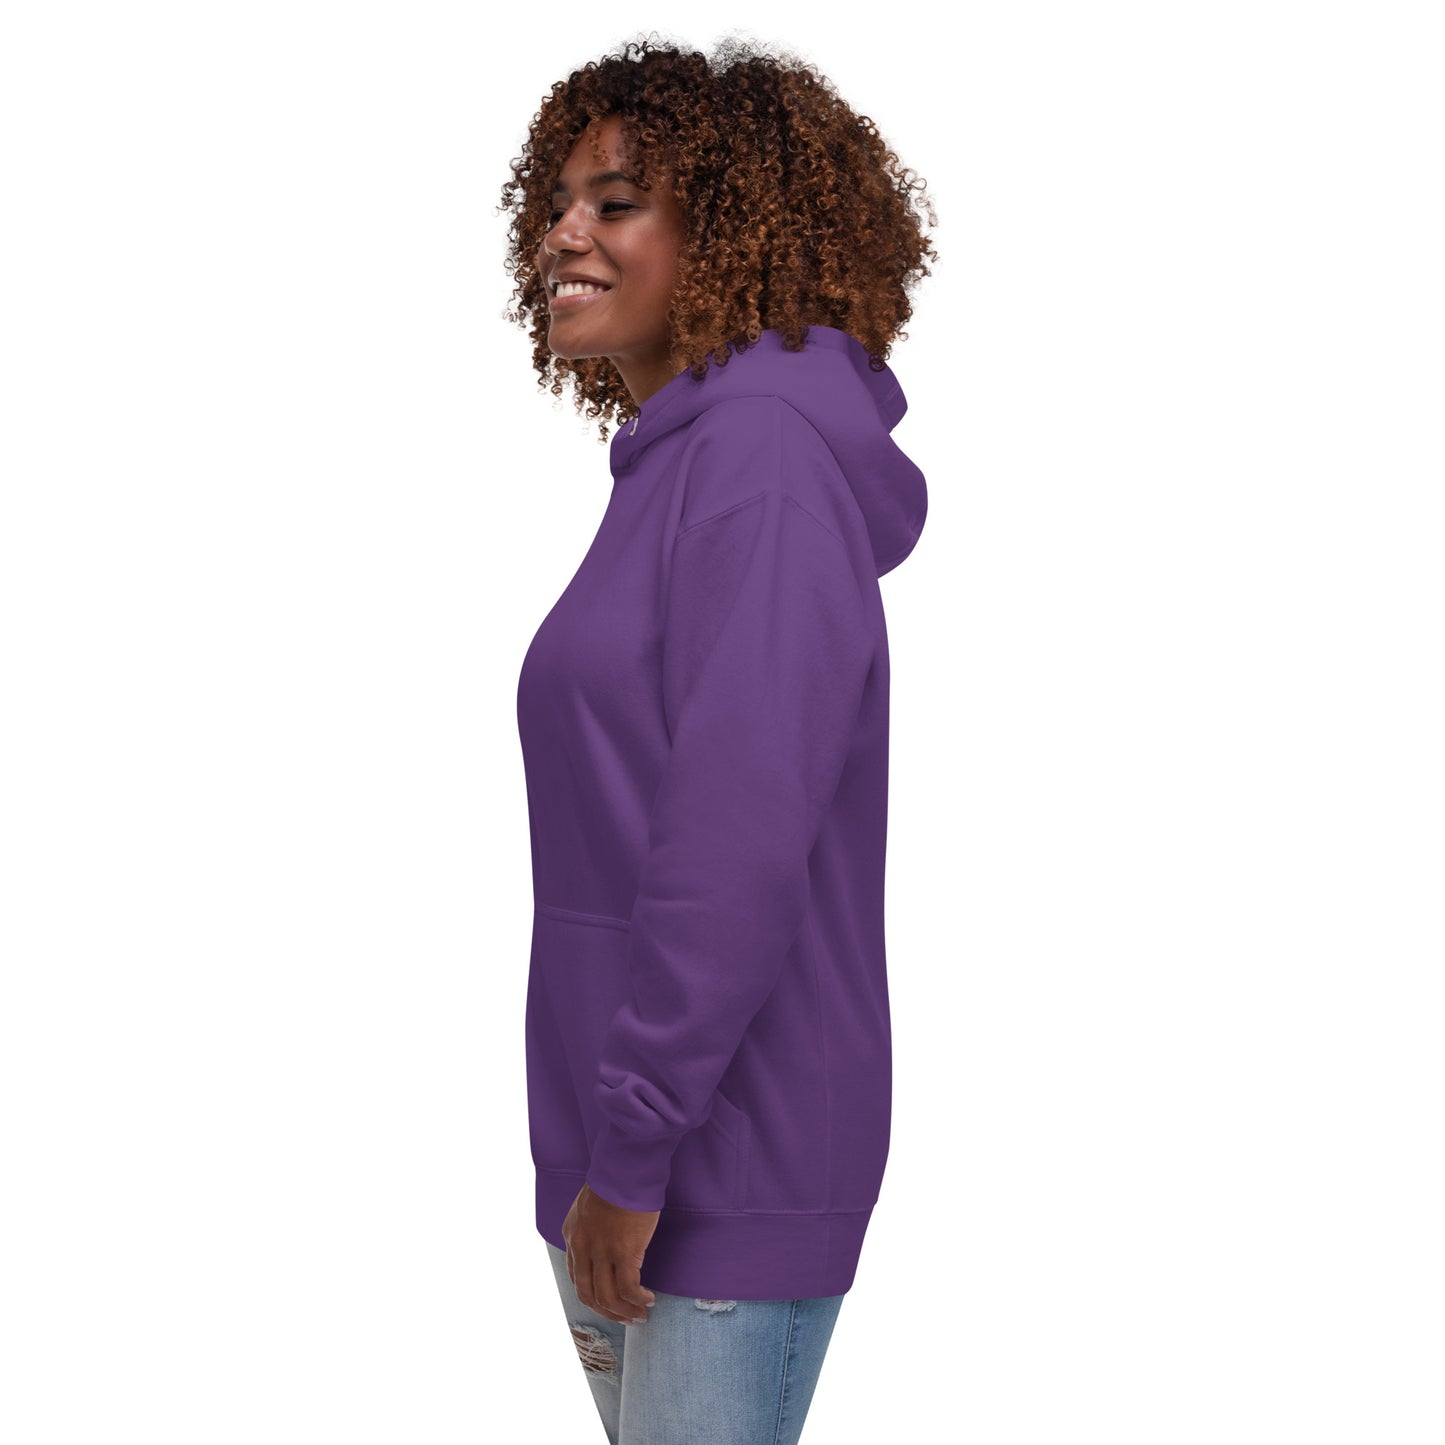 Women Hoodie Premium Quality Super Soft & Cozy Solid Color by IOBI Original Apparel